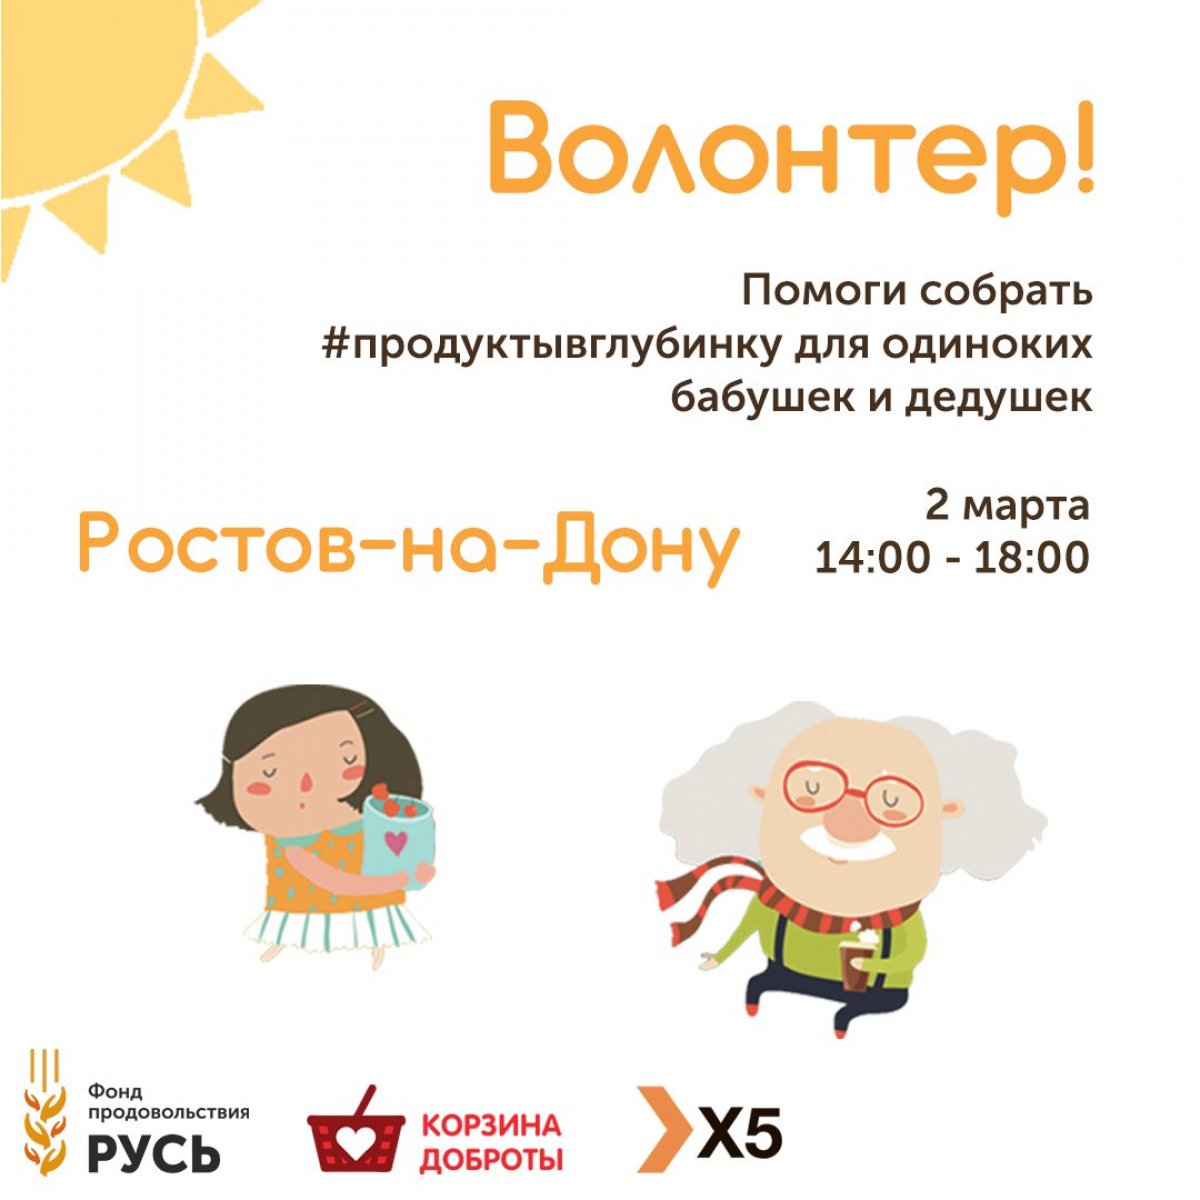 2 марта в Ростове-на-Дону пройдет общегородской продовольственный марафон «Корзина